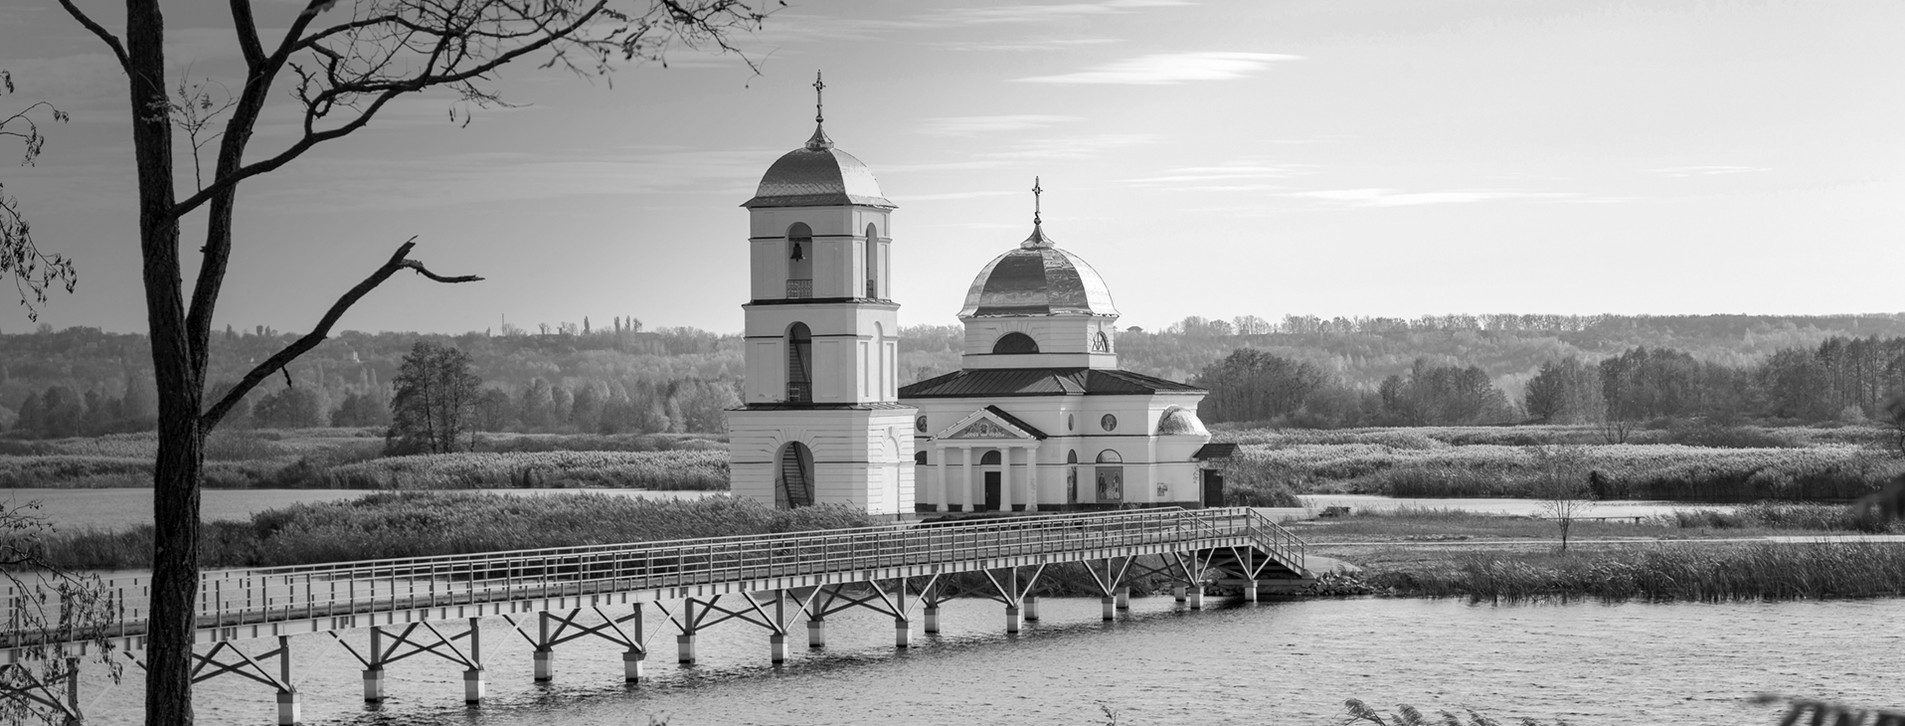 Фото 1 - Тур к затопленной церкви и днепровским кручам